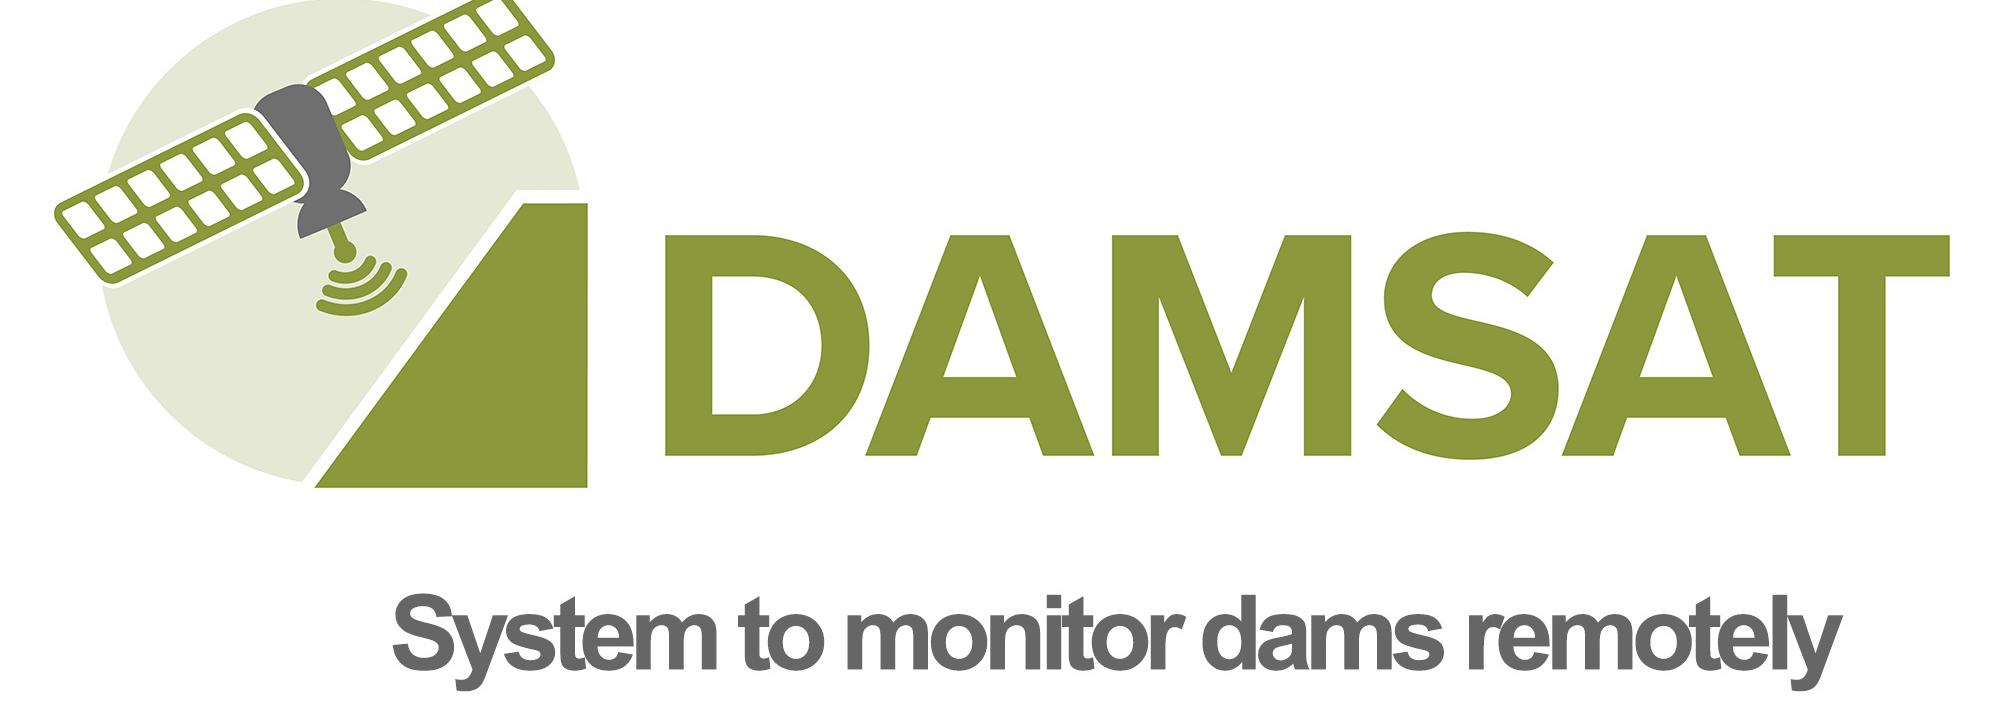 DAMSAT Logo for video